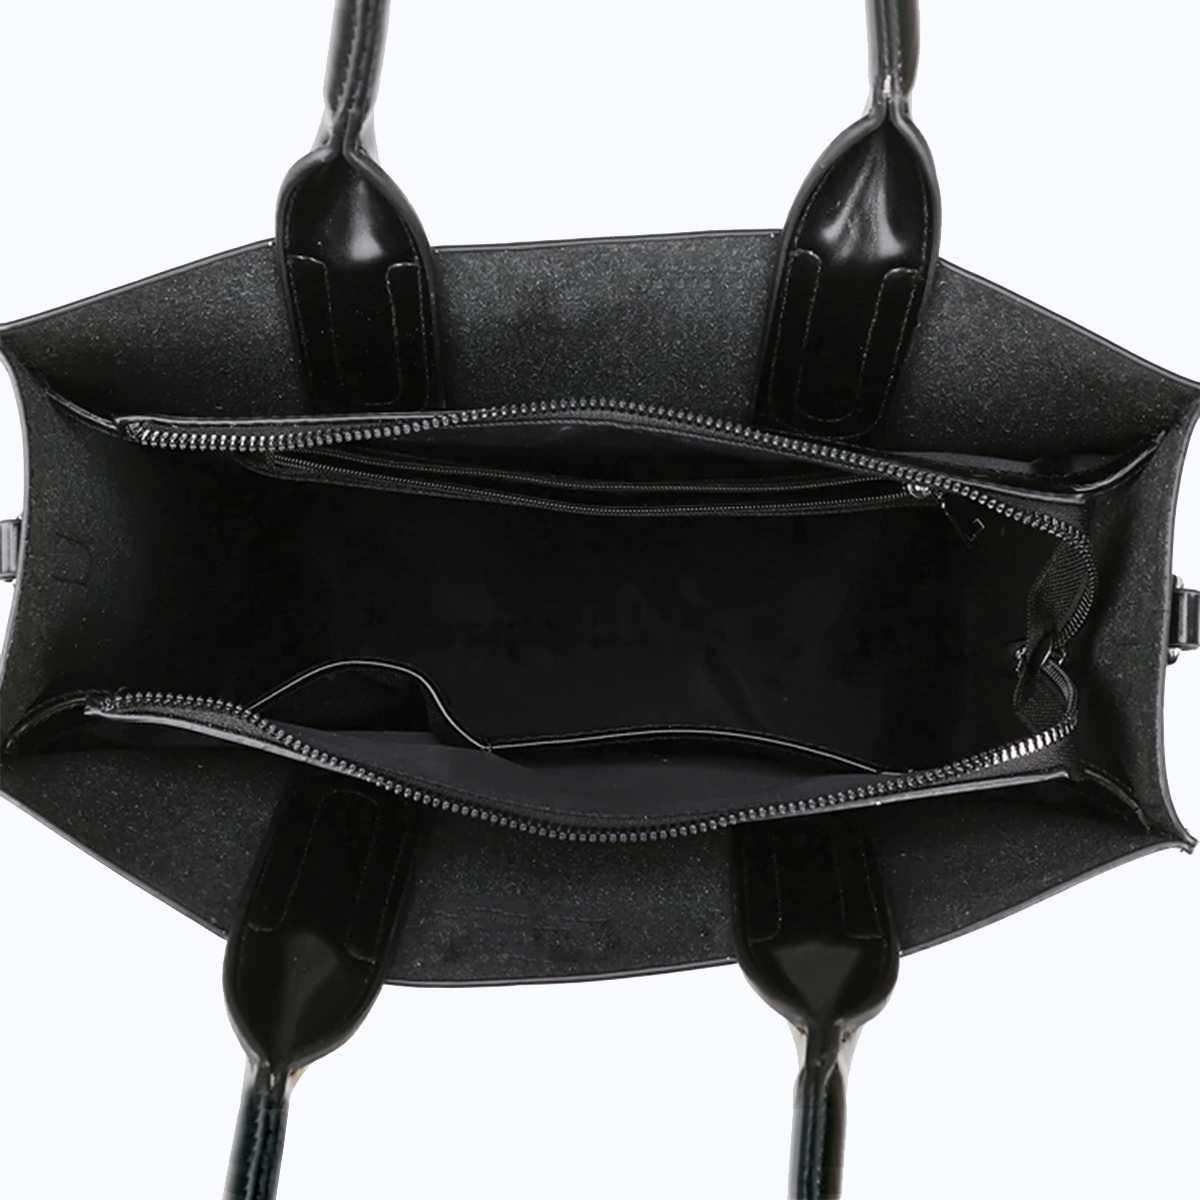 Jack Russell Terrier Luxury Handbag V1